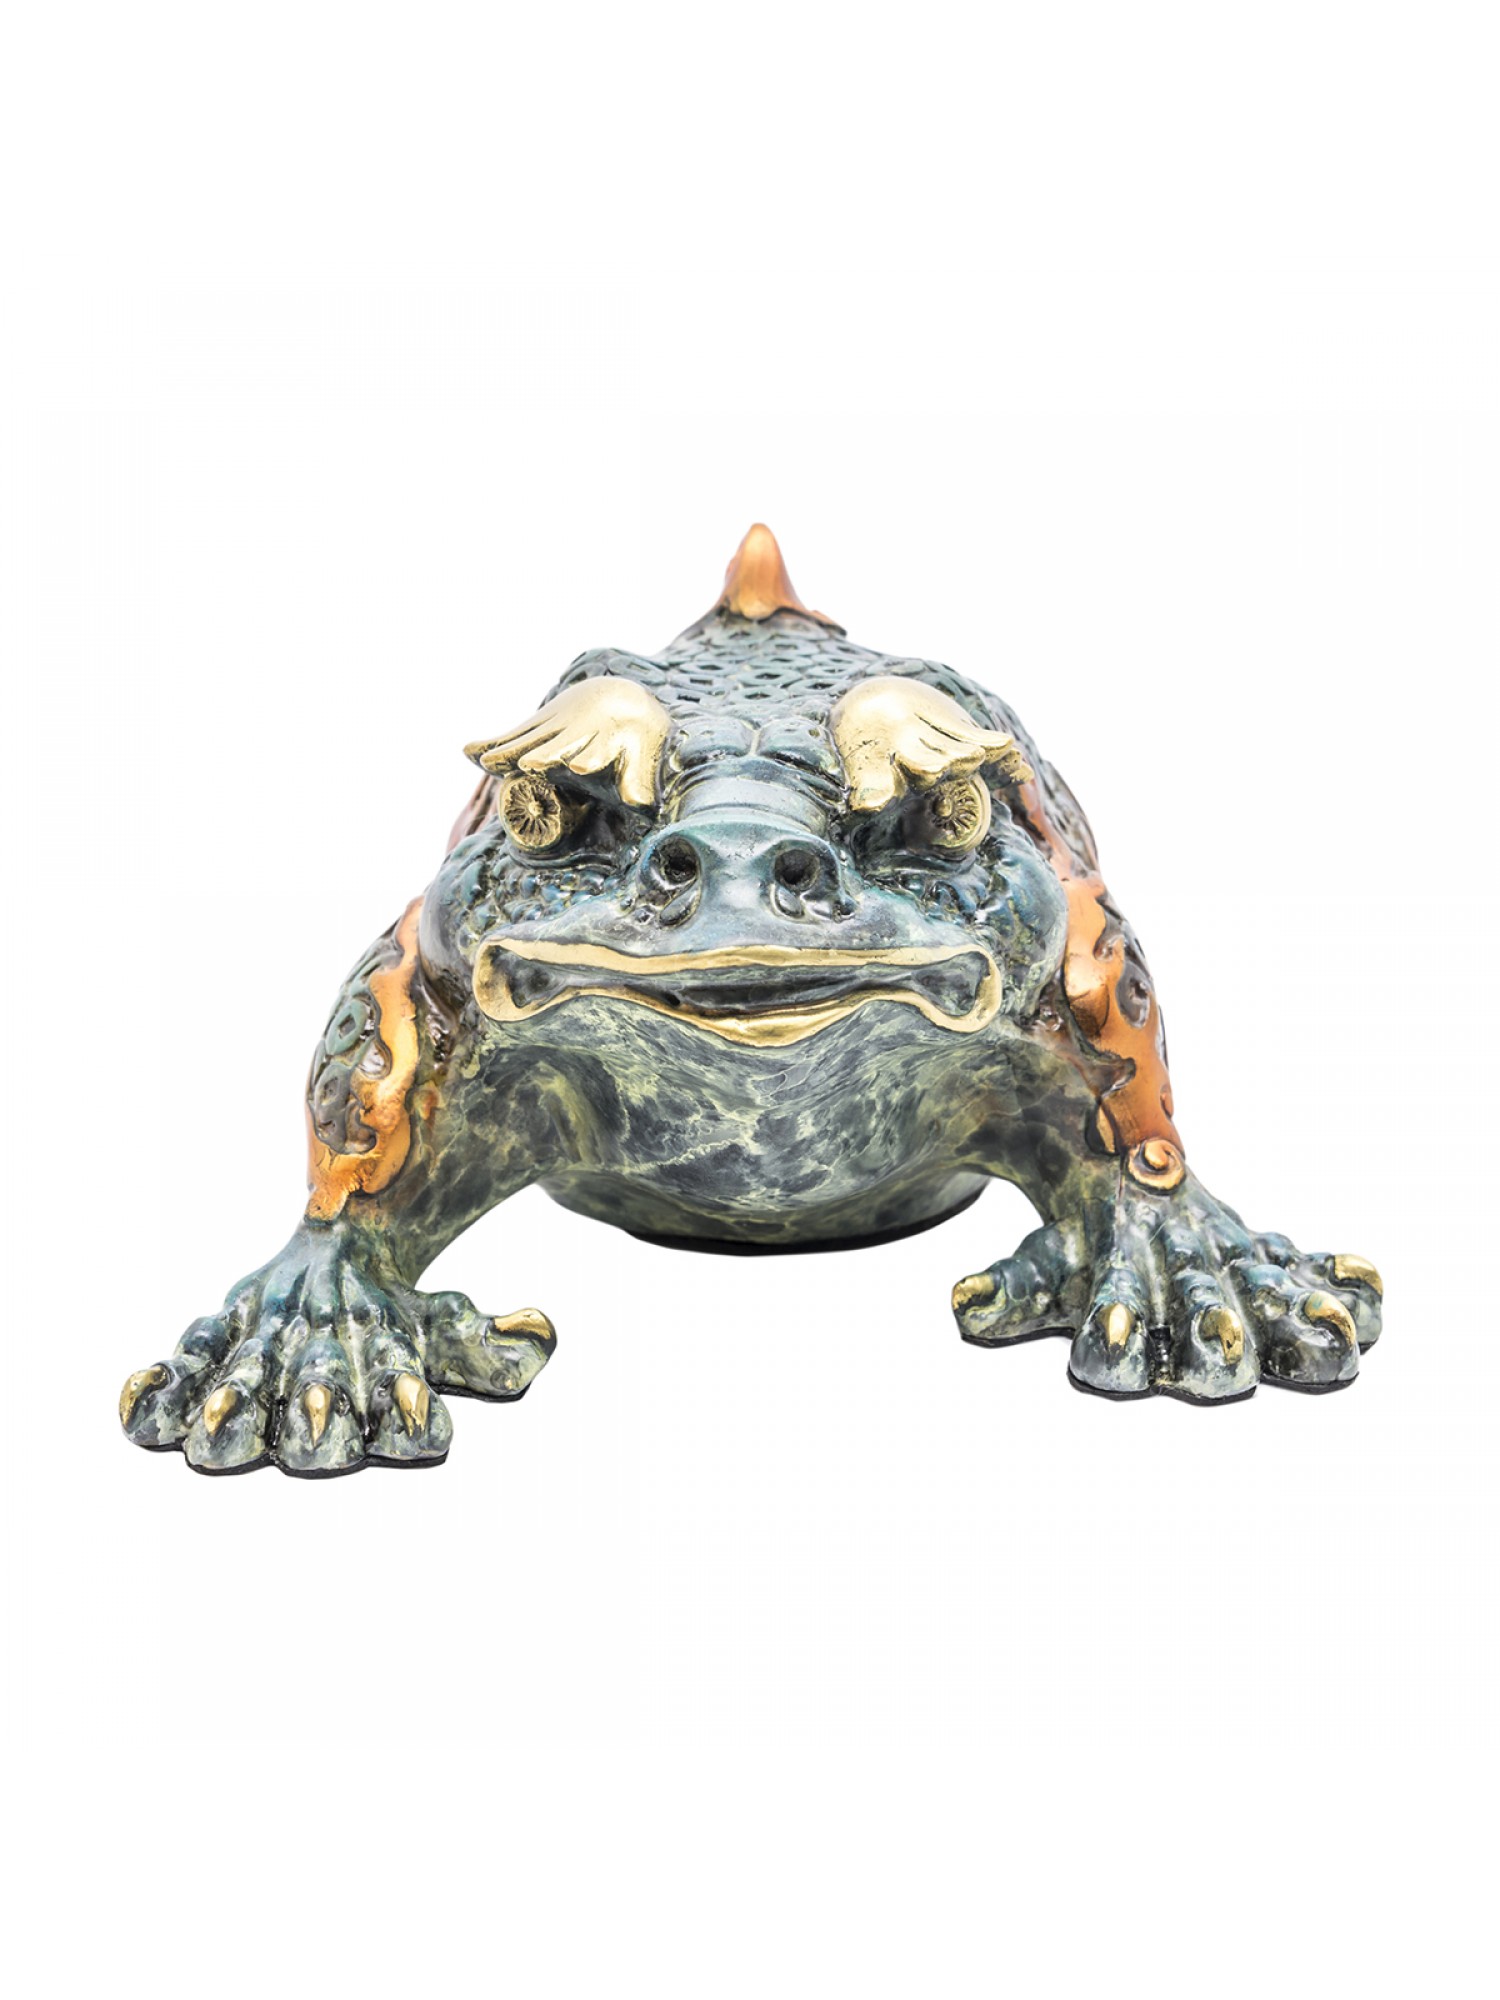 Статуэтка Трехлапая жаба синяя бронза, маленькая